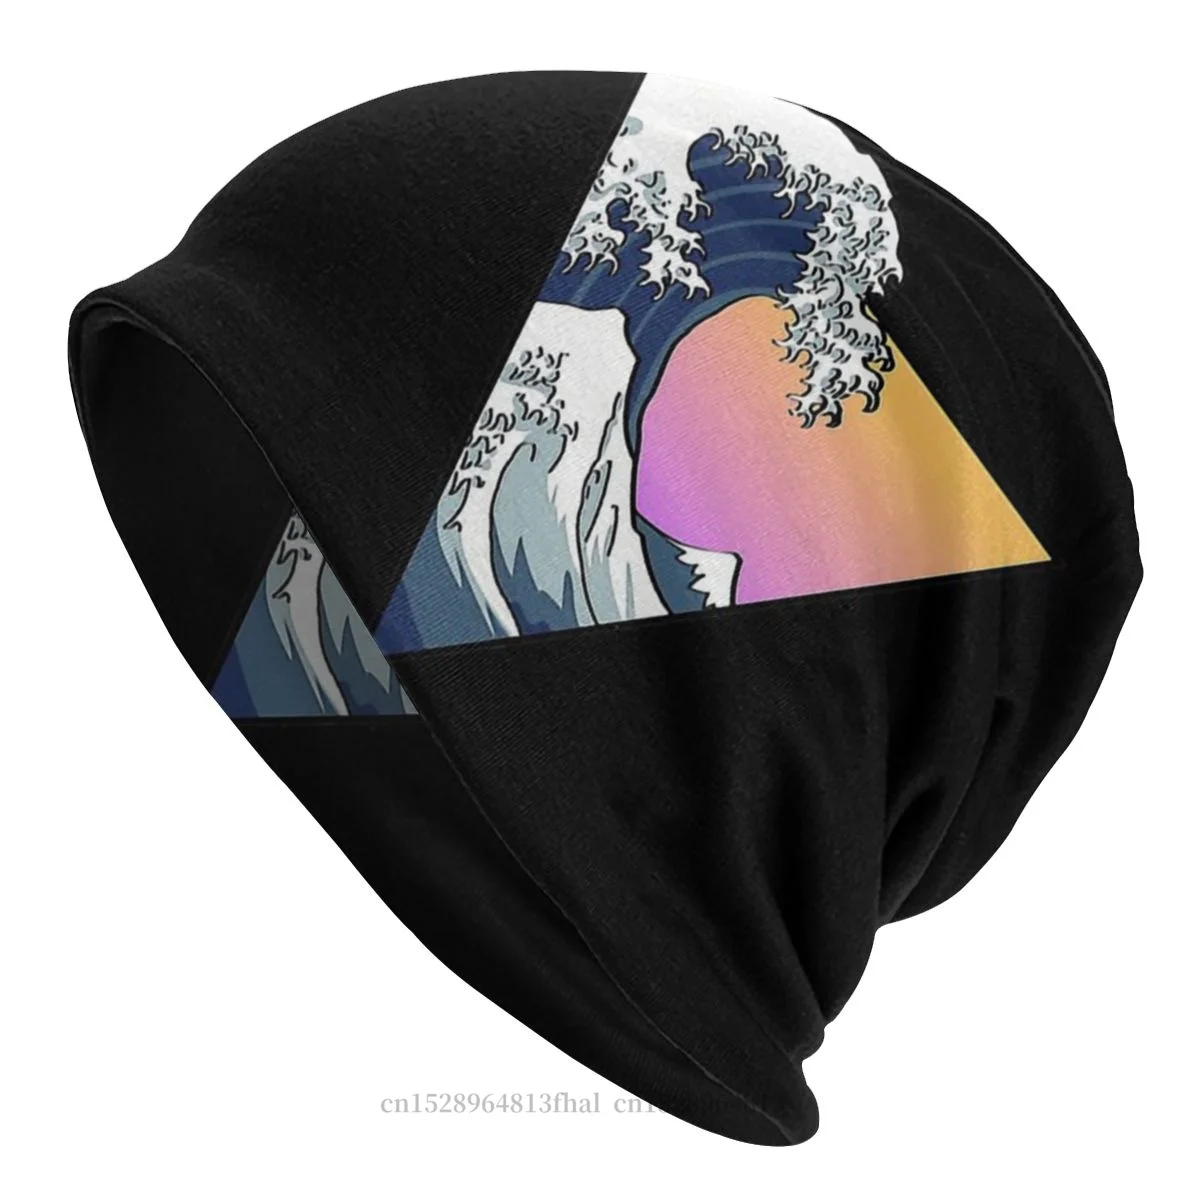 

Bonnet Hats Vaporwave Aesthetic Meme Retro Men Women's Skullies Beanies Hat Great Wave Winter Warm Cap Hip Hop Caps